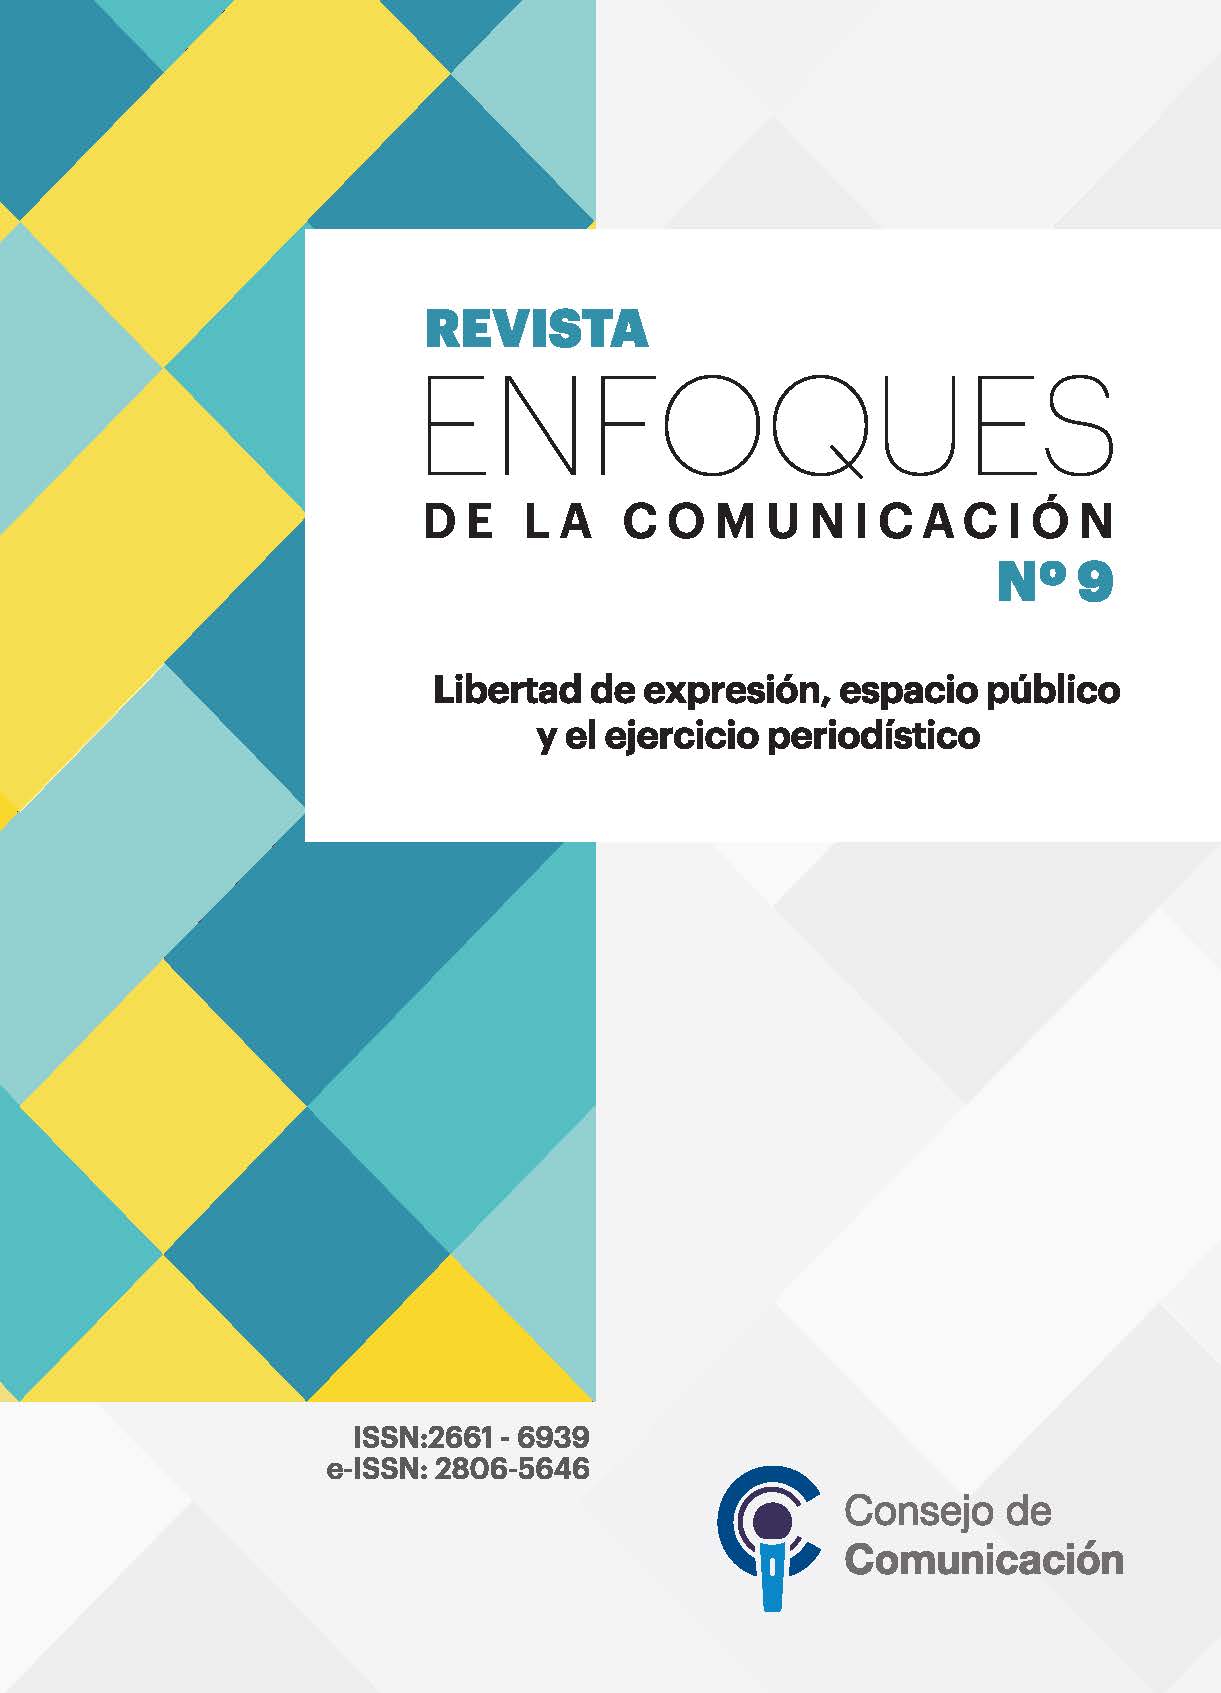 Revista Enfoques de la Comunicación 9 "Libertad de expresión, espacio público y el ejercicio periodístico"